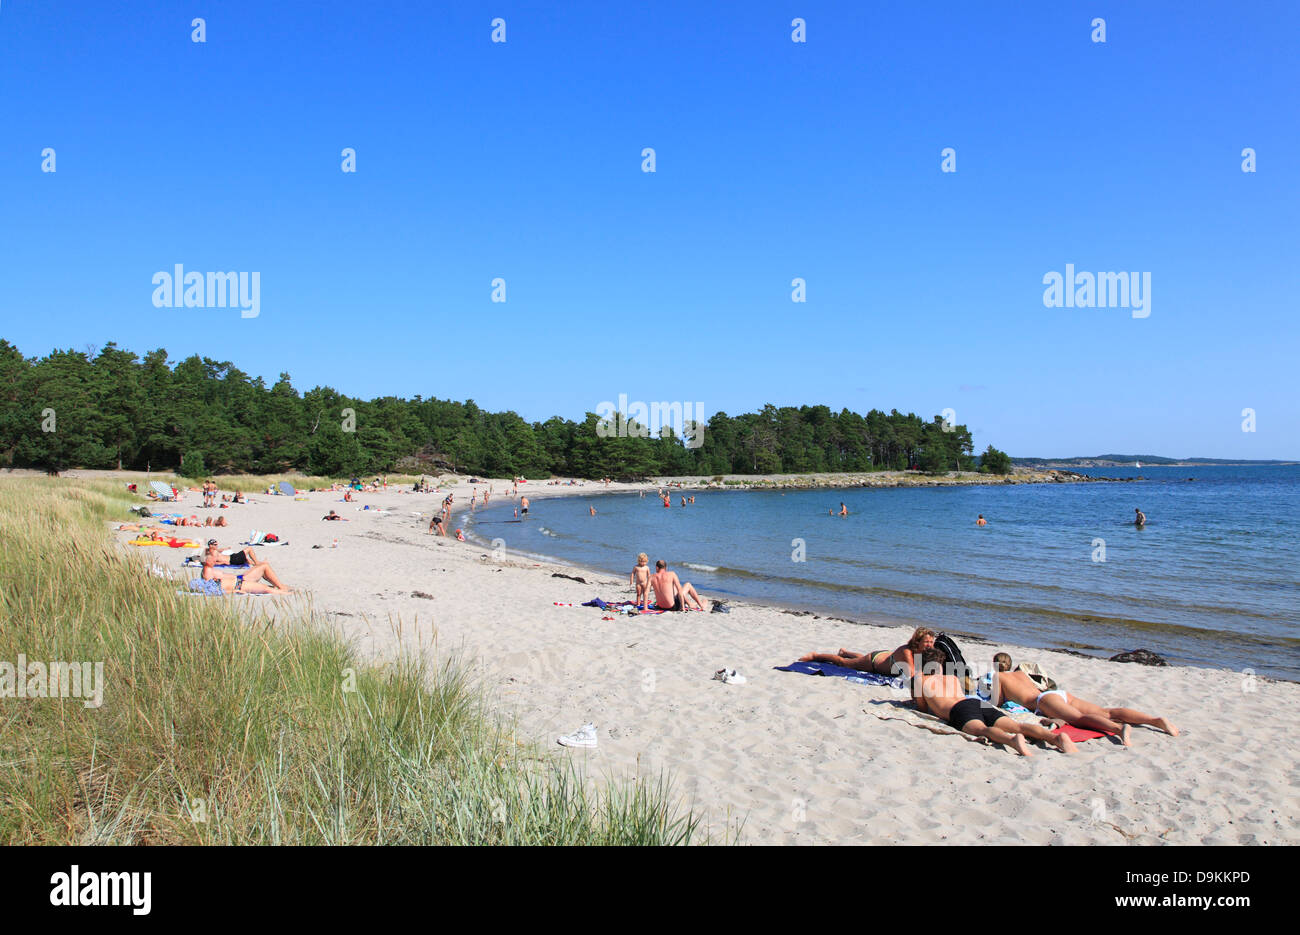 Storsand beach, Nattaroe, île de l'archipel de Stockholm, côte de la mer Baltique, la Suède, Scandinavie Banque D'Images